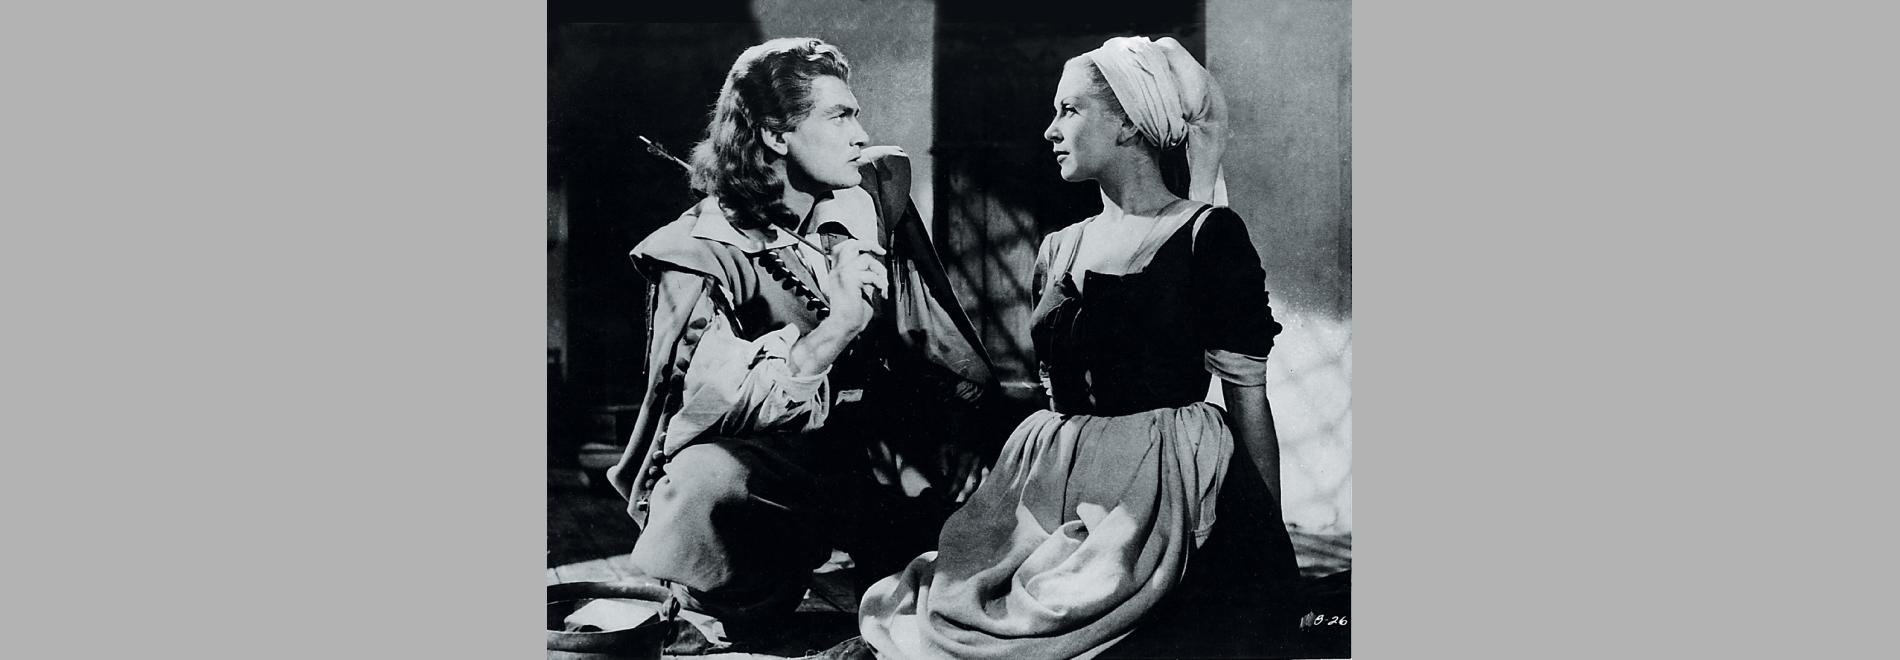 La Belle et la Bête (Jean Cocteau, 1946)